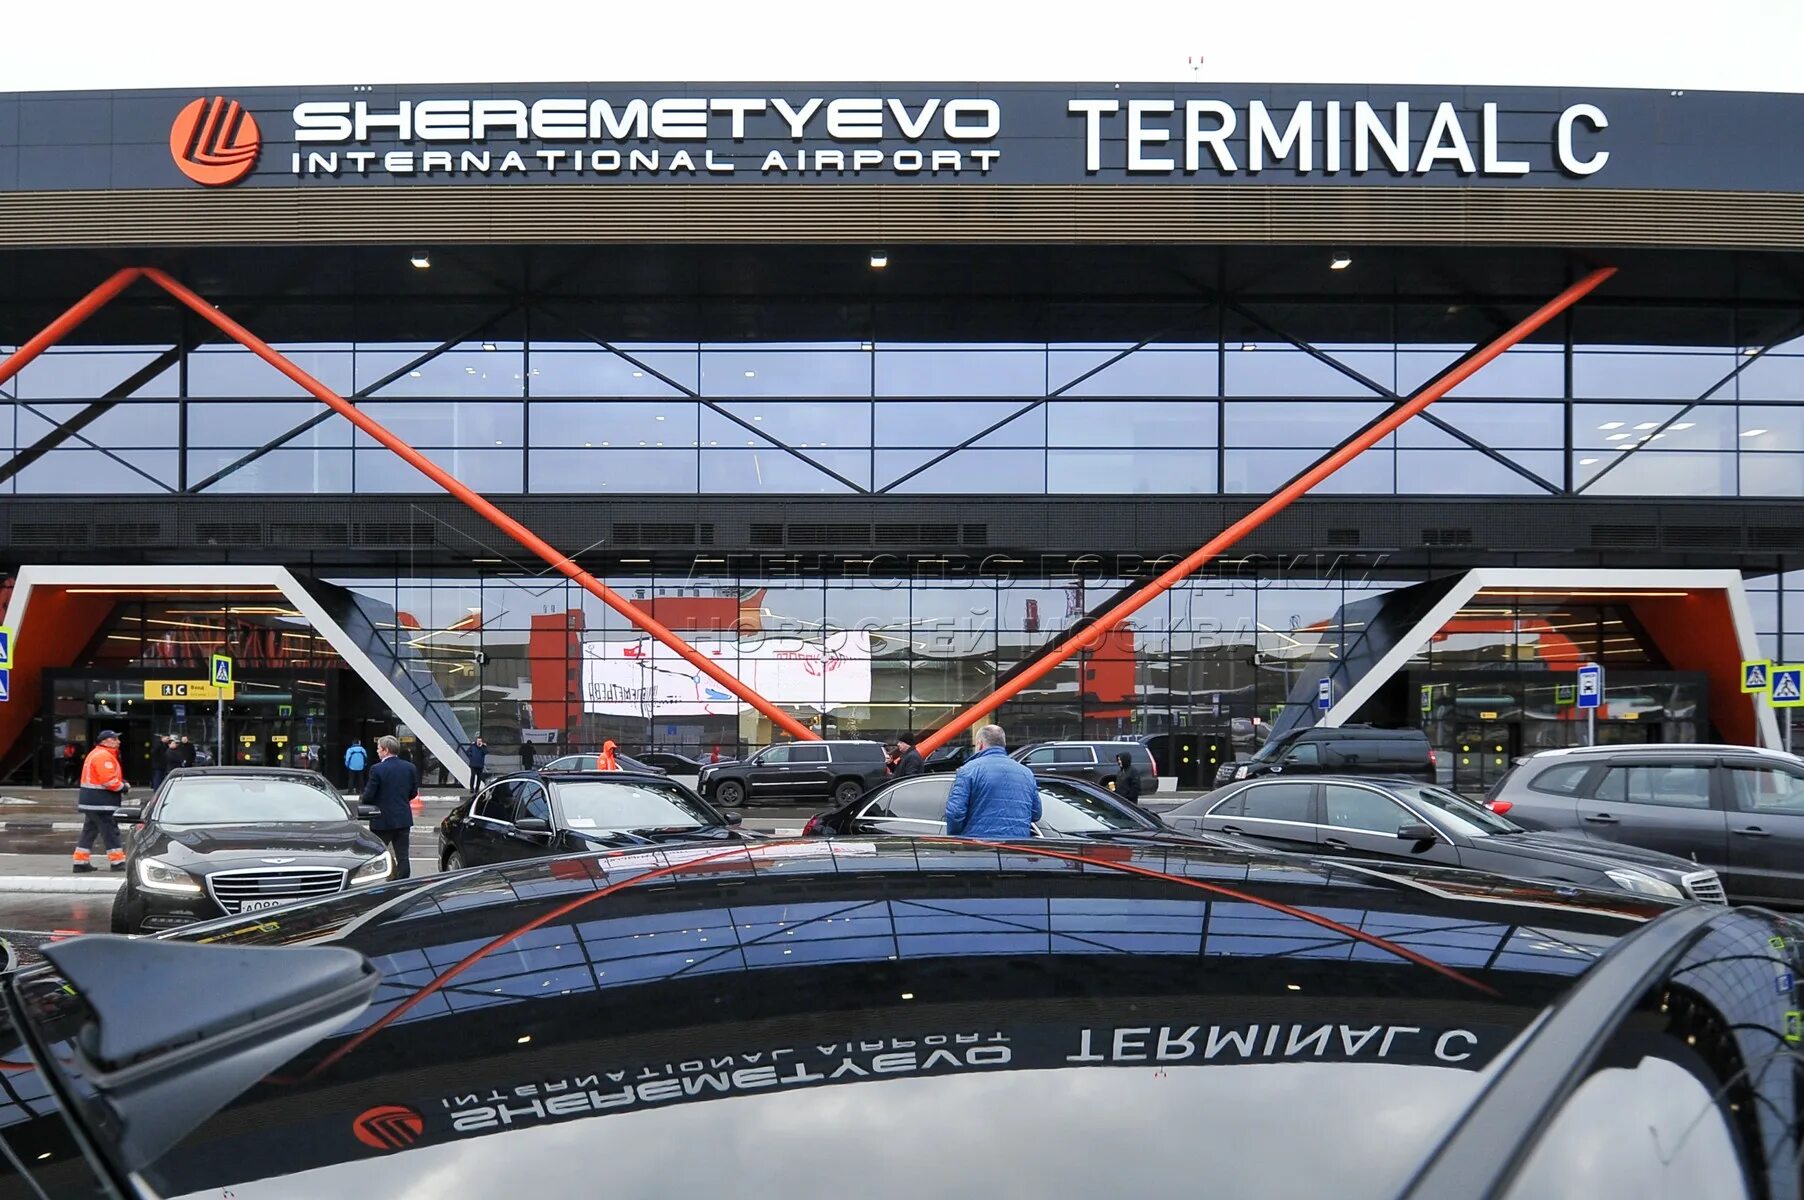 Аэропорт шереметьево терминал ц. Шереметьево терминал c. Шереметьево терминал в. Шереметьево новый терминал c. Аэропорт Шереметьево новый терминал c.